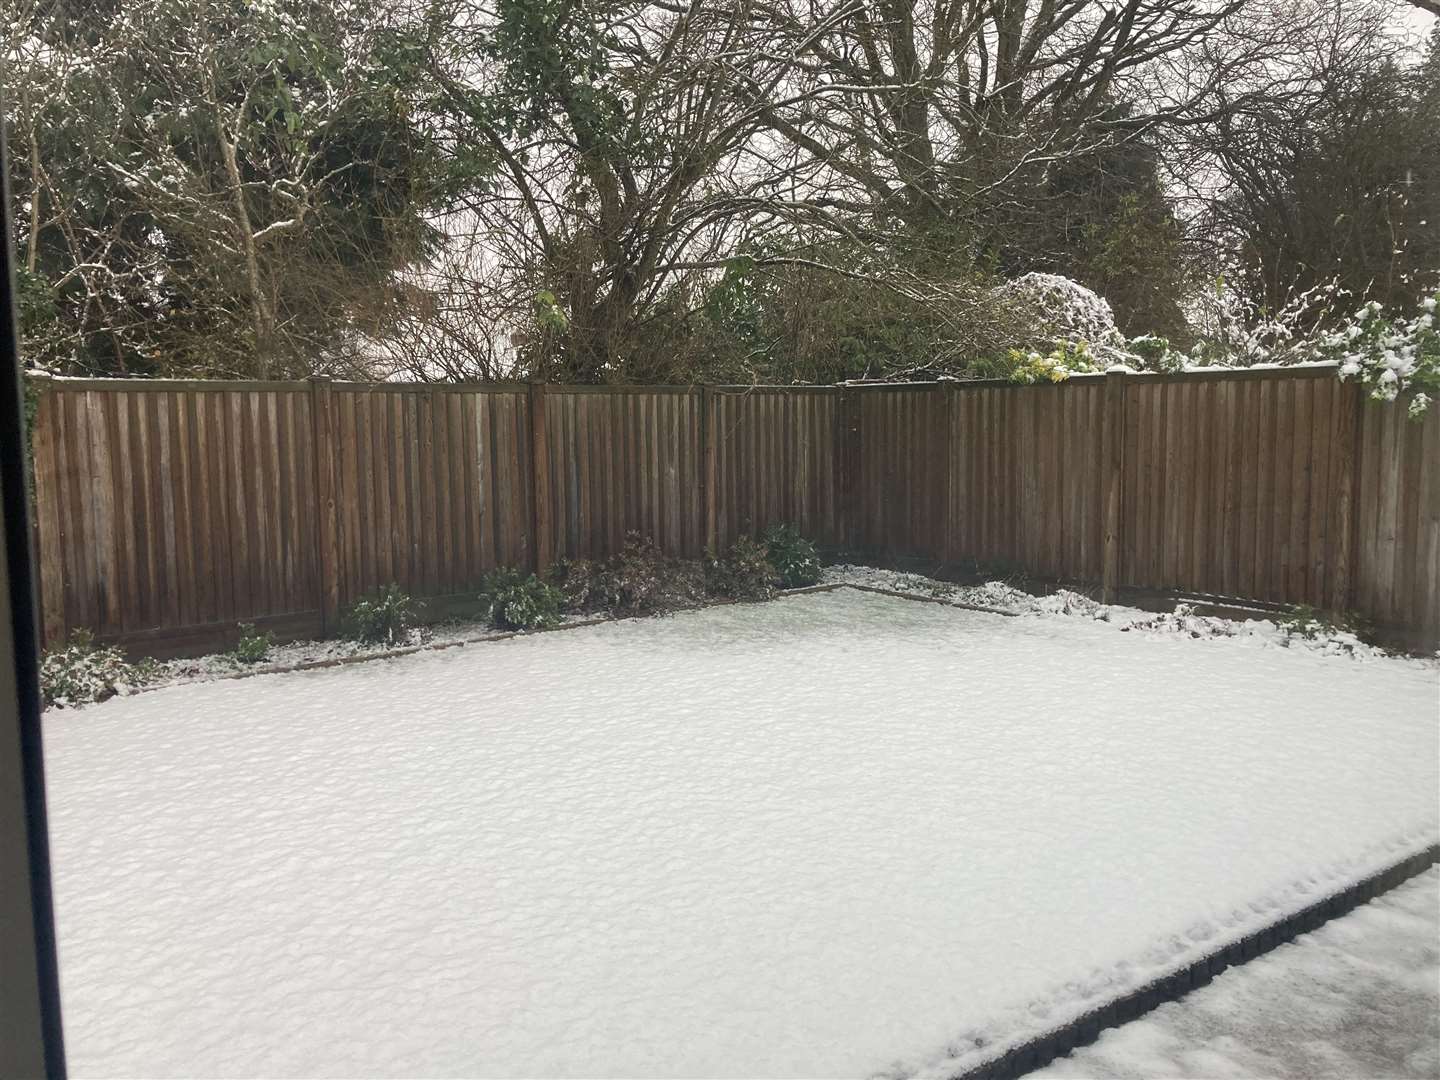 Snow has been seen in parts of Sevenoaks